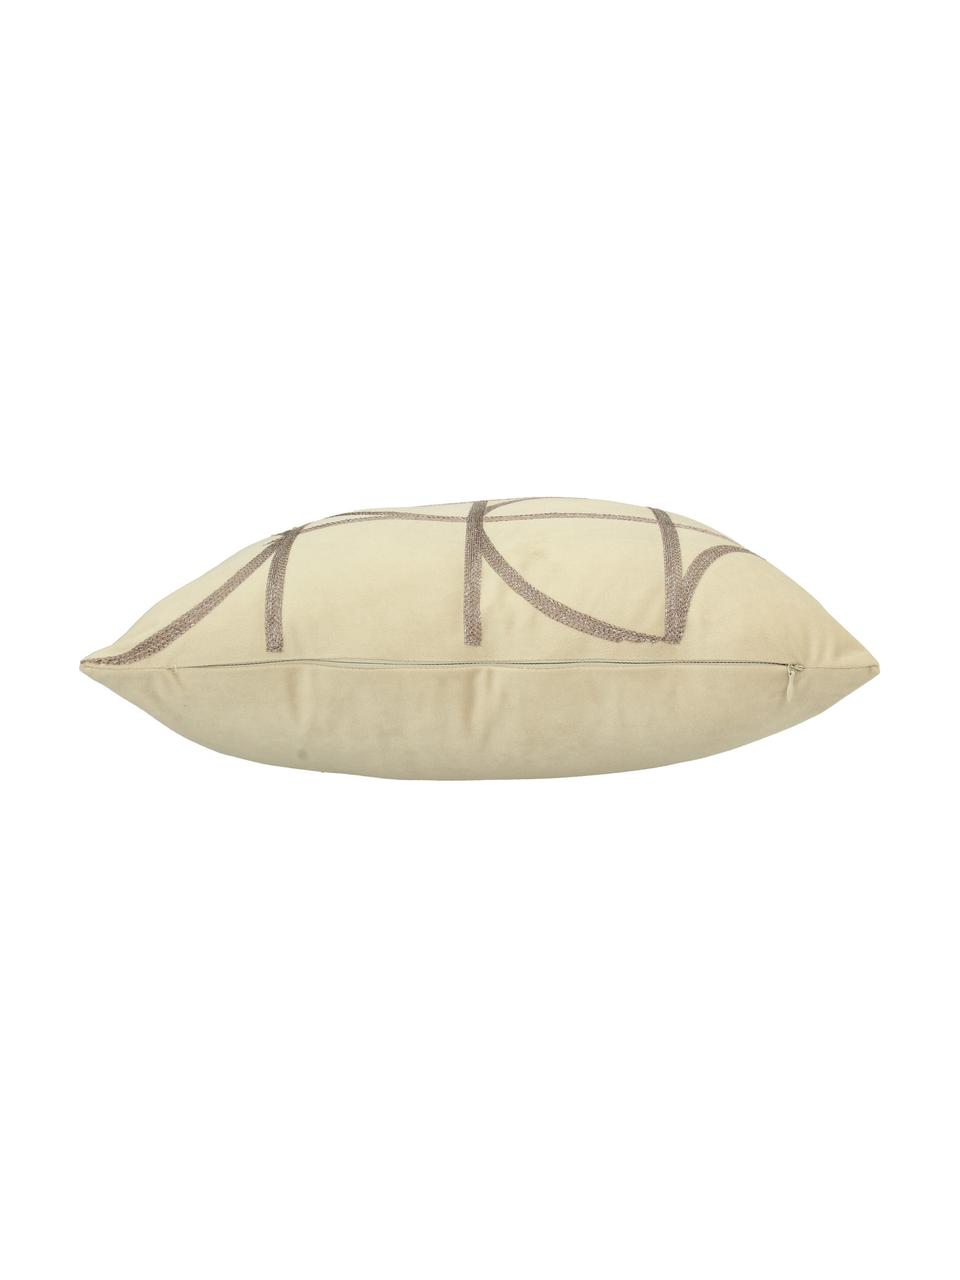 Poduszka  z aksamitu z wypełnieniem Geometric, Tapicerka: aksamit poliestrowy, Beżowy, taupe, S 45 x D 45 cm